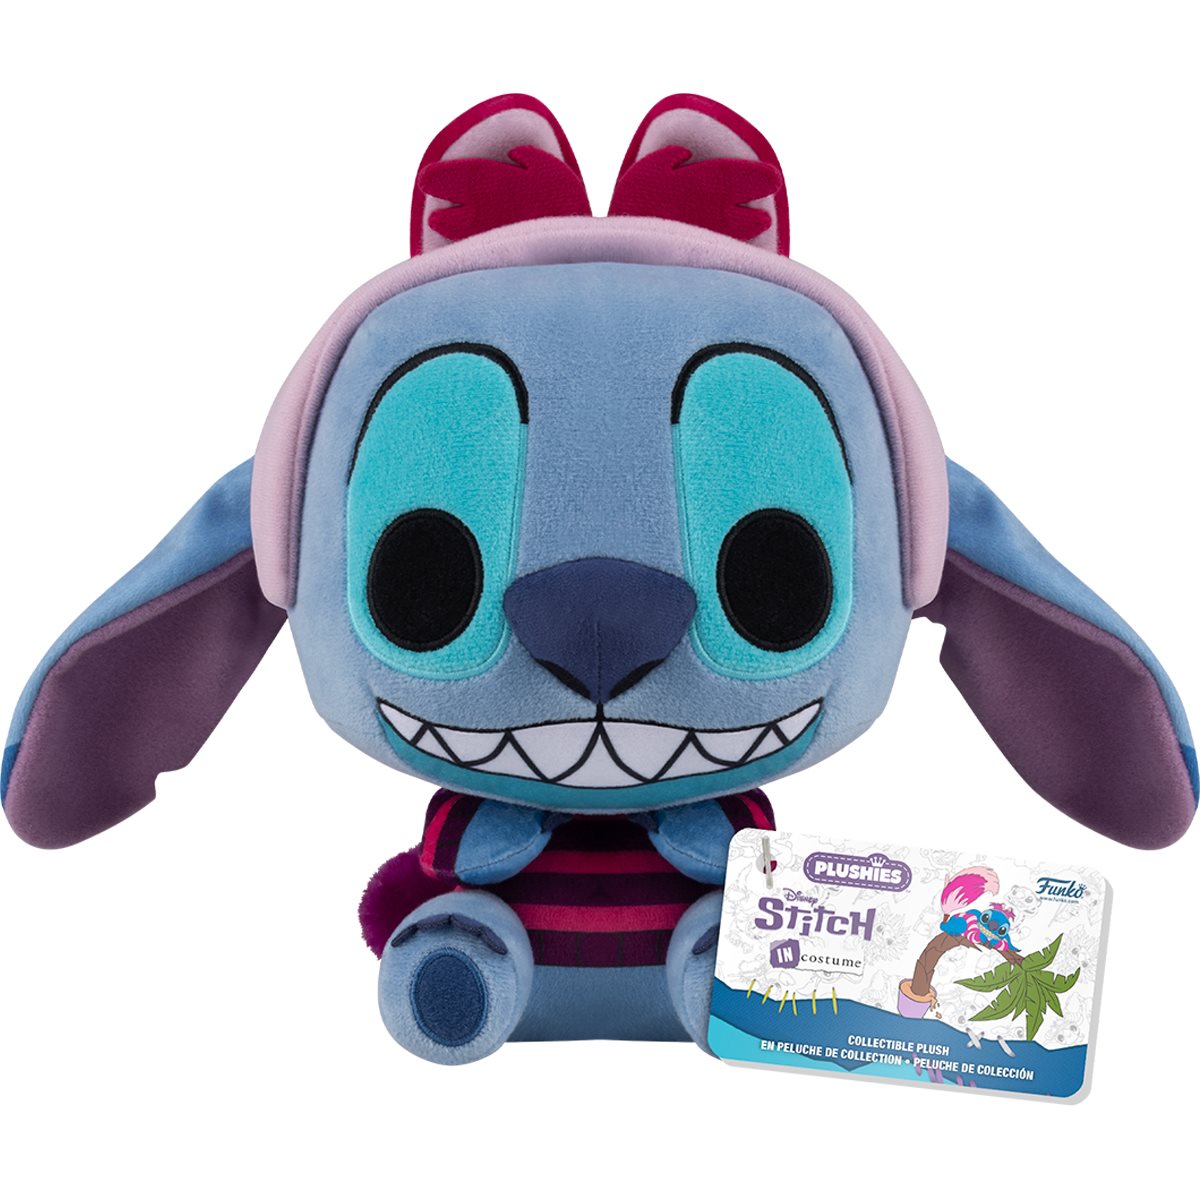 Funko Pop Plush: Disney Stitch In Costume - Stitch Como El Gato Sonriente 7 Pulgadas